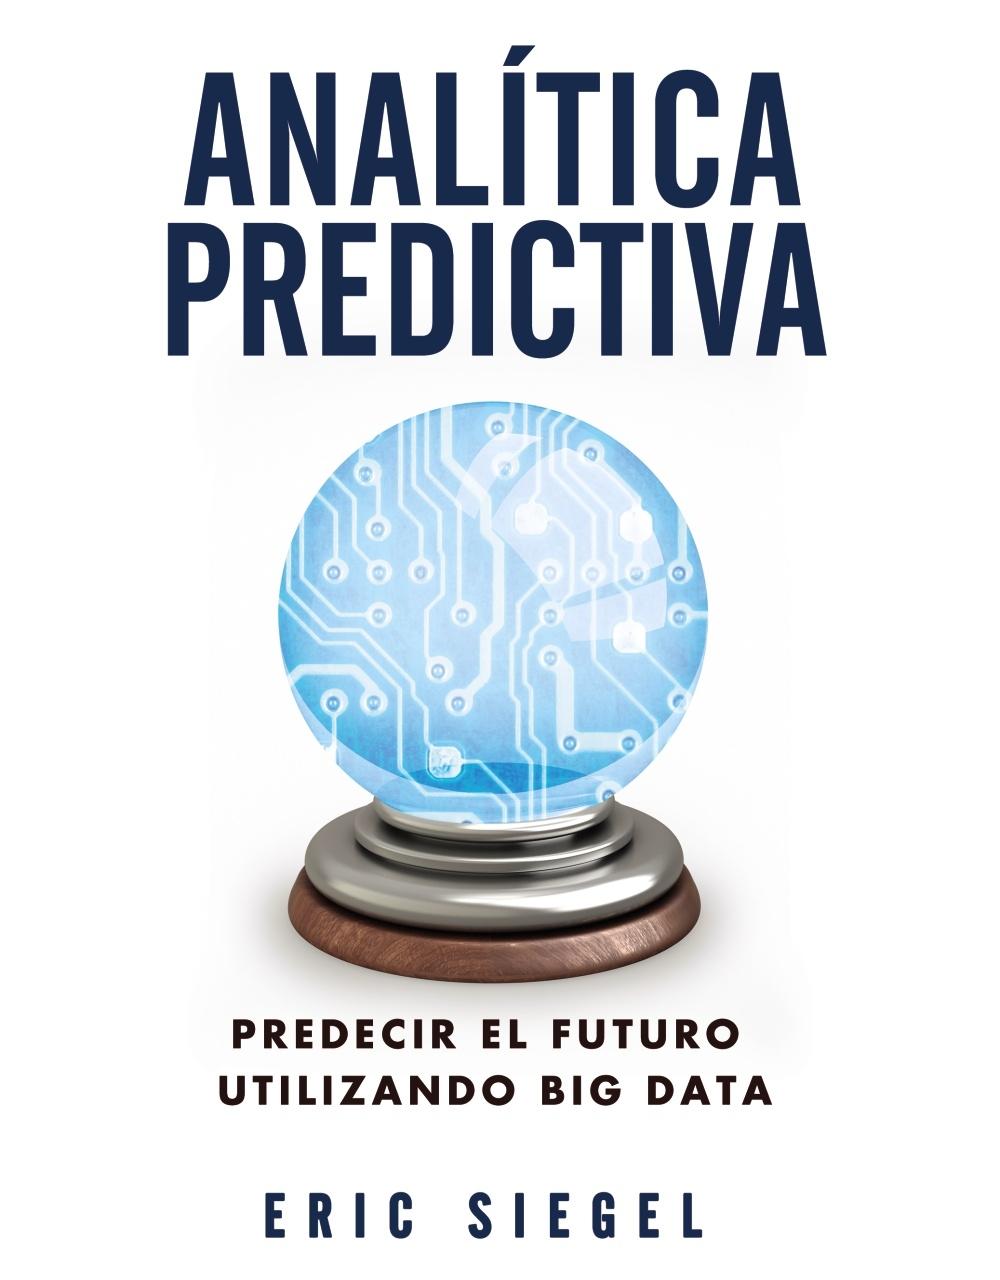 Analítica predictiva "Predecir el futuro utilizando Big Data"